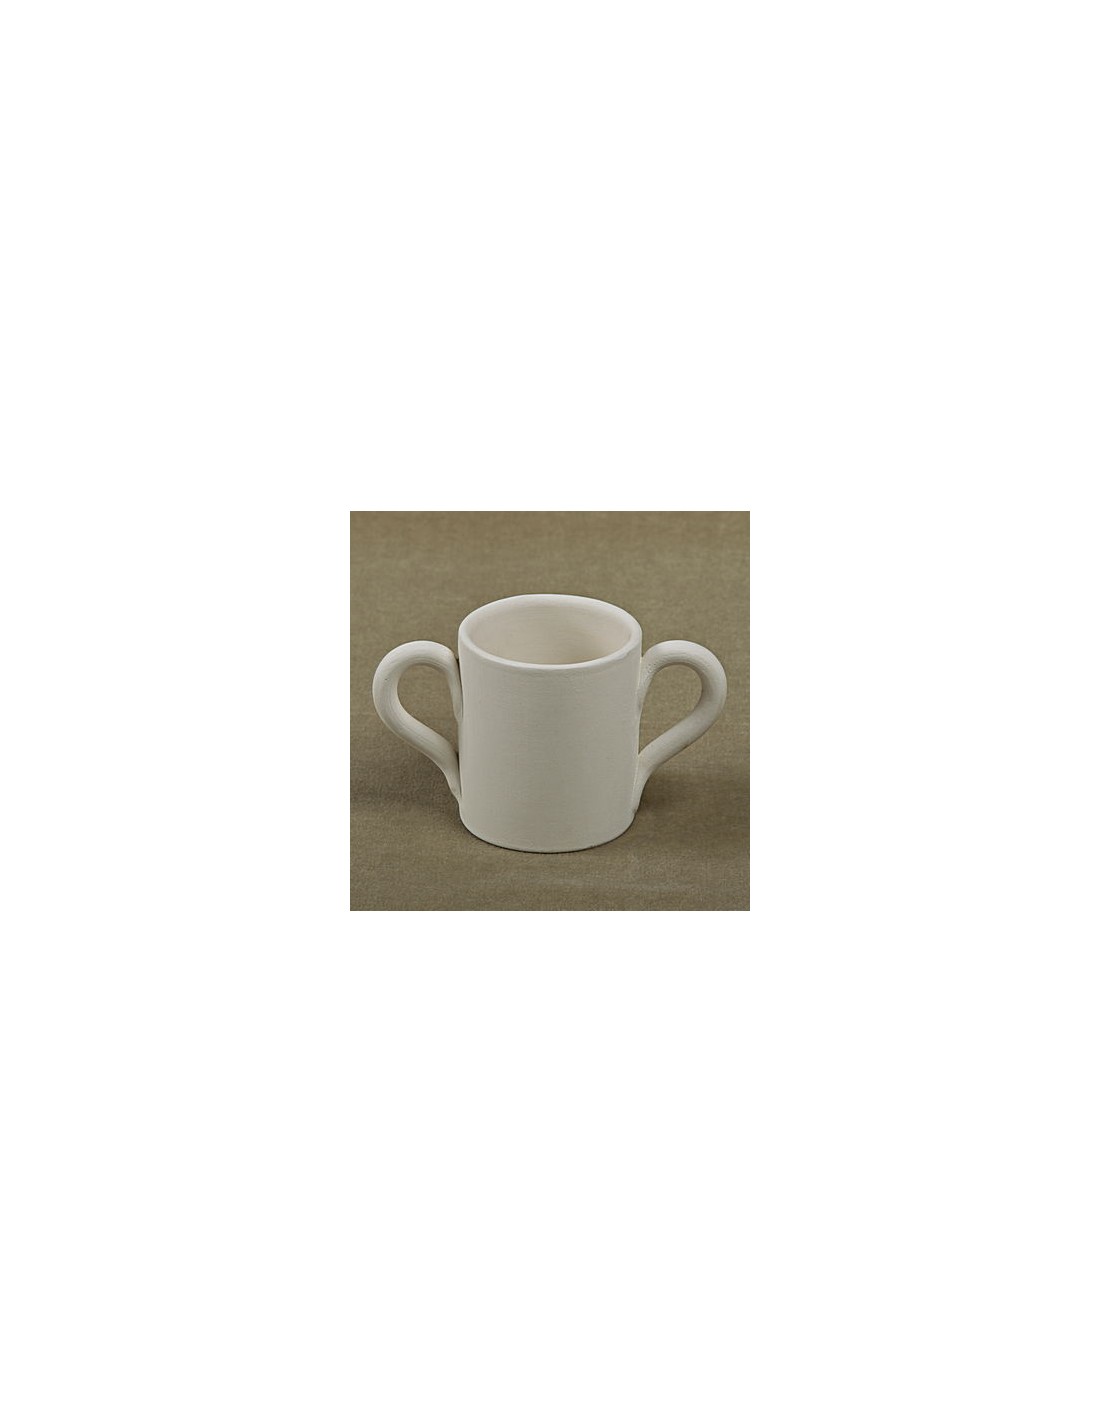 Lotto stock 2 tazze mug colazione ceramica da collezione bambini bimbo  bimba